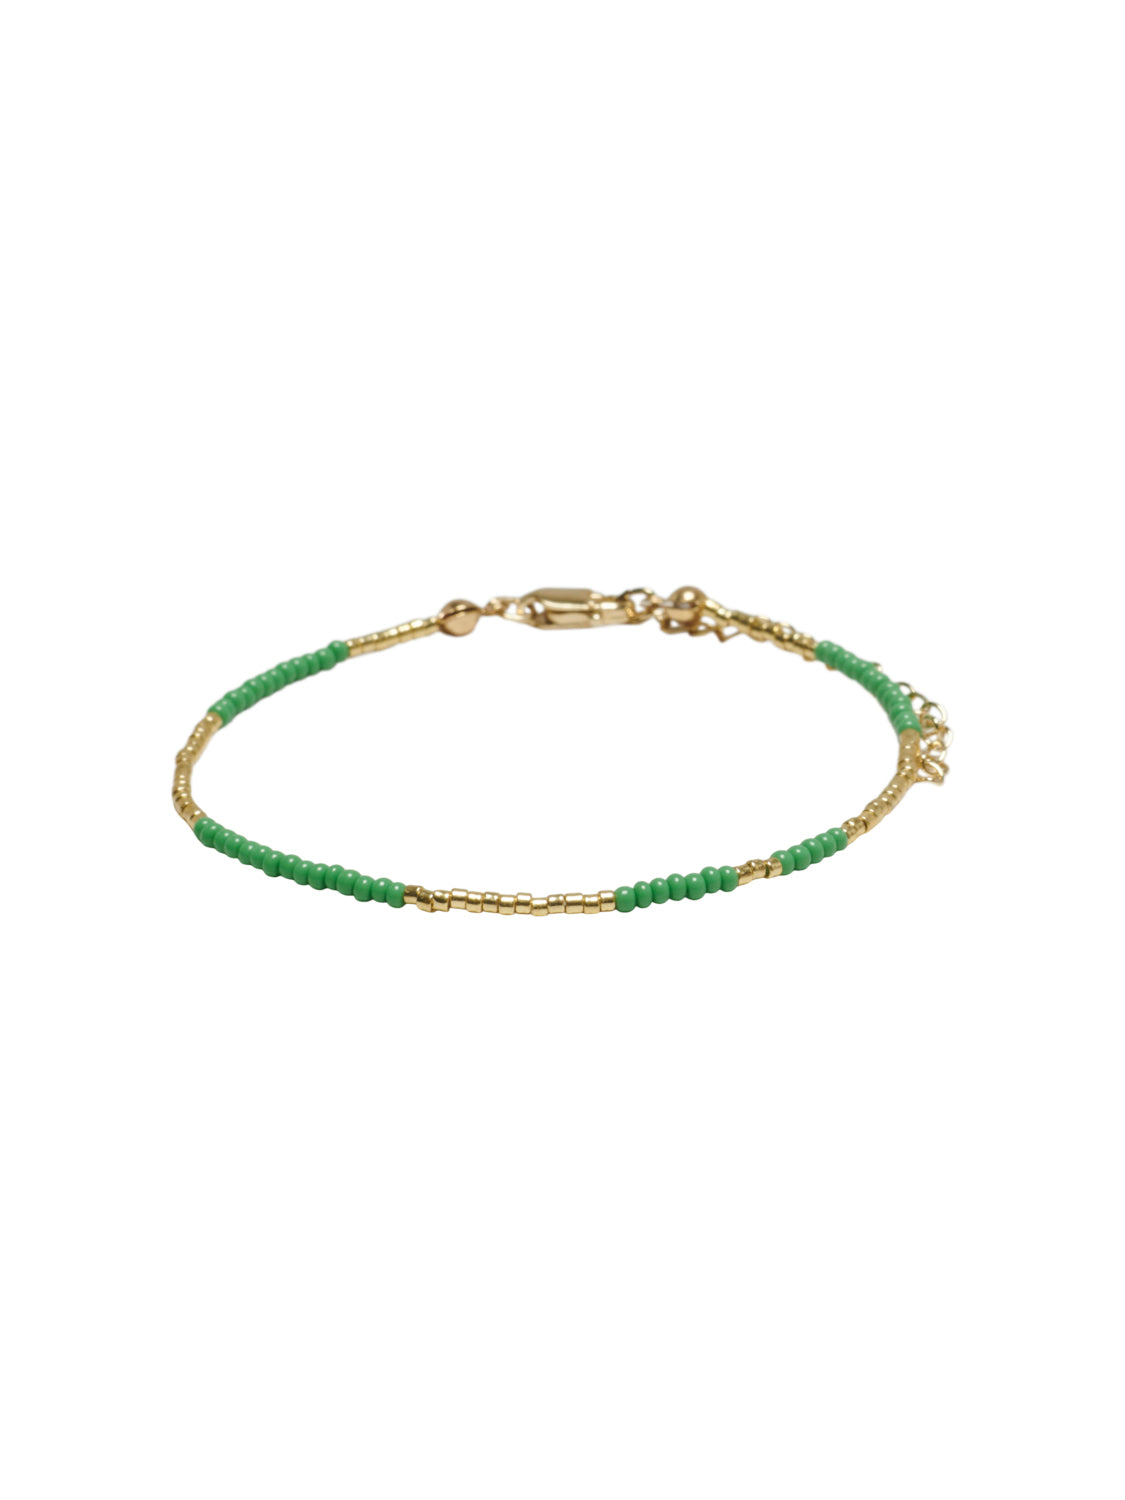 ONLMARIE Bracelets - Green Bee